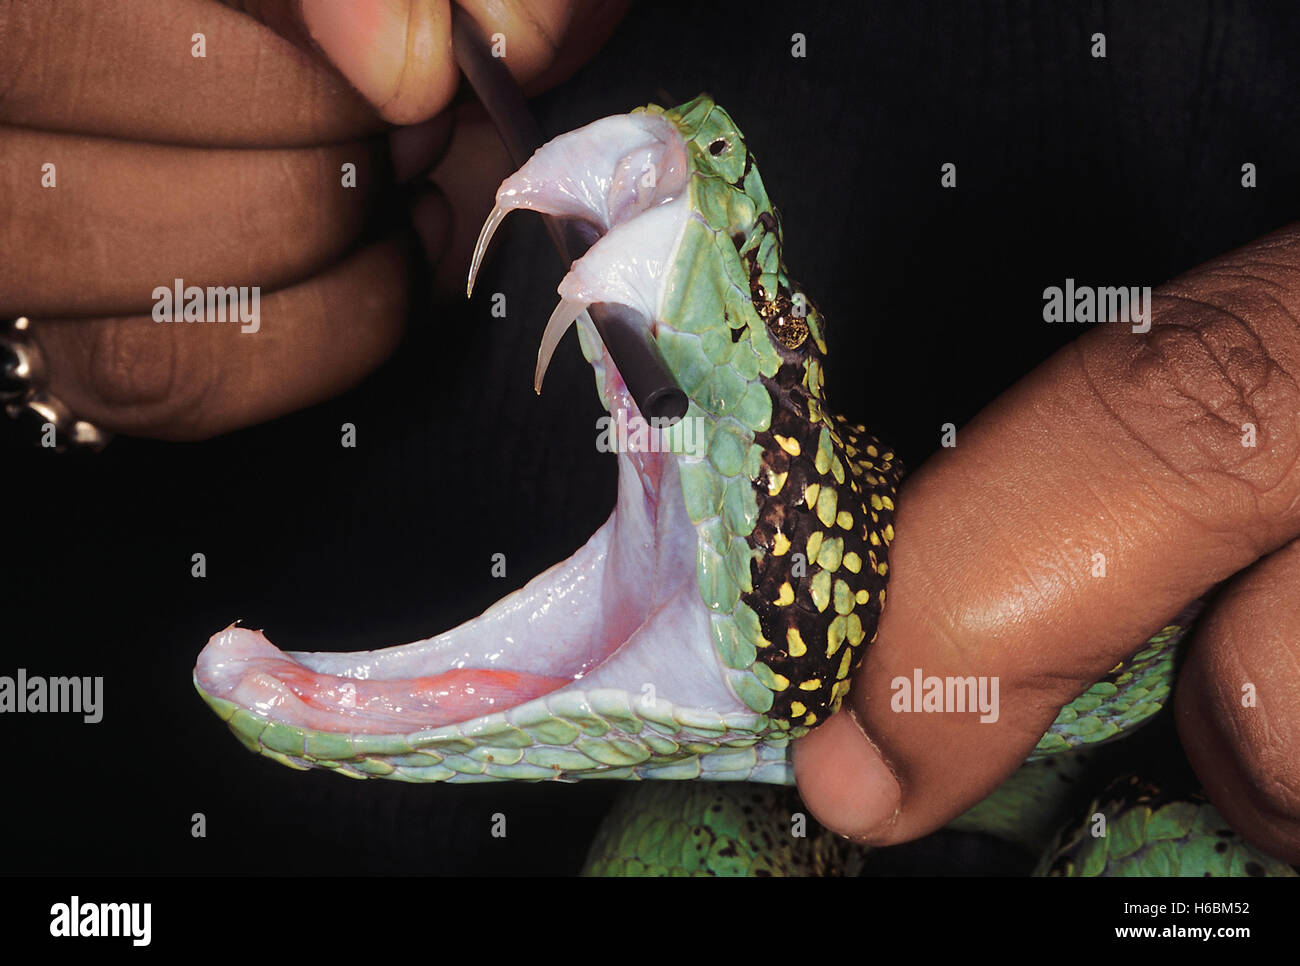 Trimeresurus Malabaricus. Il Malabar Pit Viper. Una chiusura della testa del serpente con la bocca aperta che mostra le zanne esposte. Foto Stock